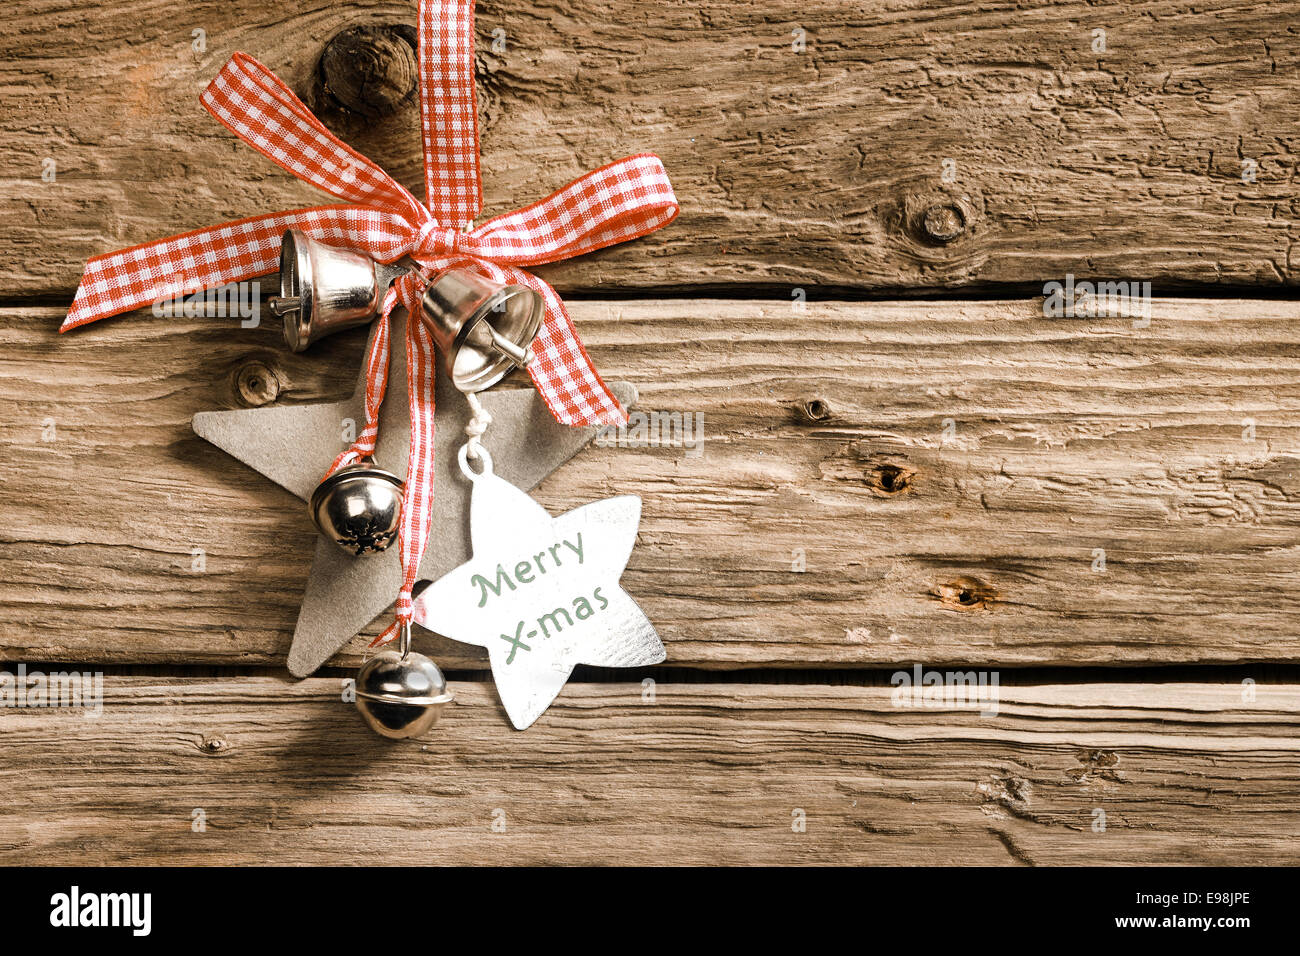 Ein Land feiert überprüft Weihnachten mit dekorativen Sternen und Silberglocke Habging aus ein rot-weißes, Band und Schleife am rustikalen Holzbretter mit einem sternförmigen Tag mit der Meldung - Frohe Weihnachten Stockfoto